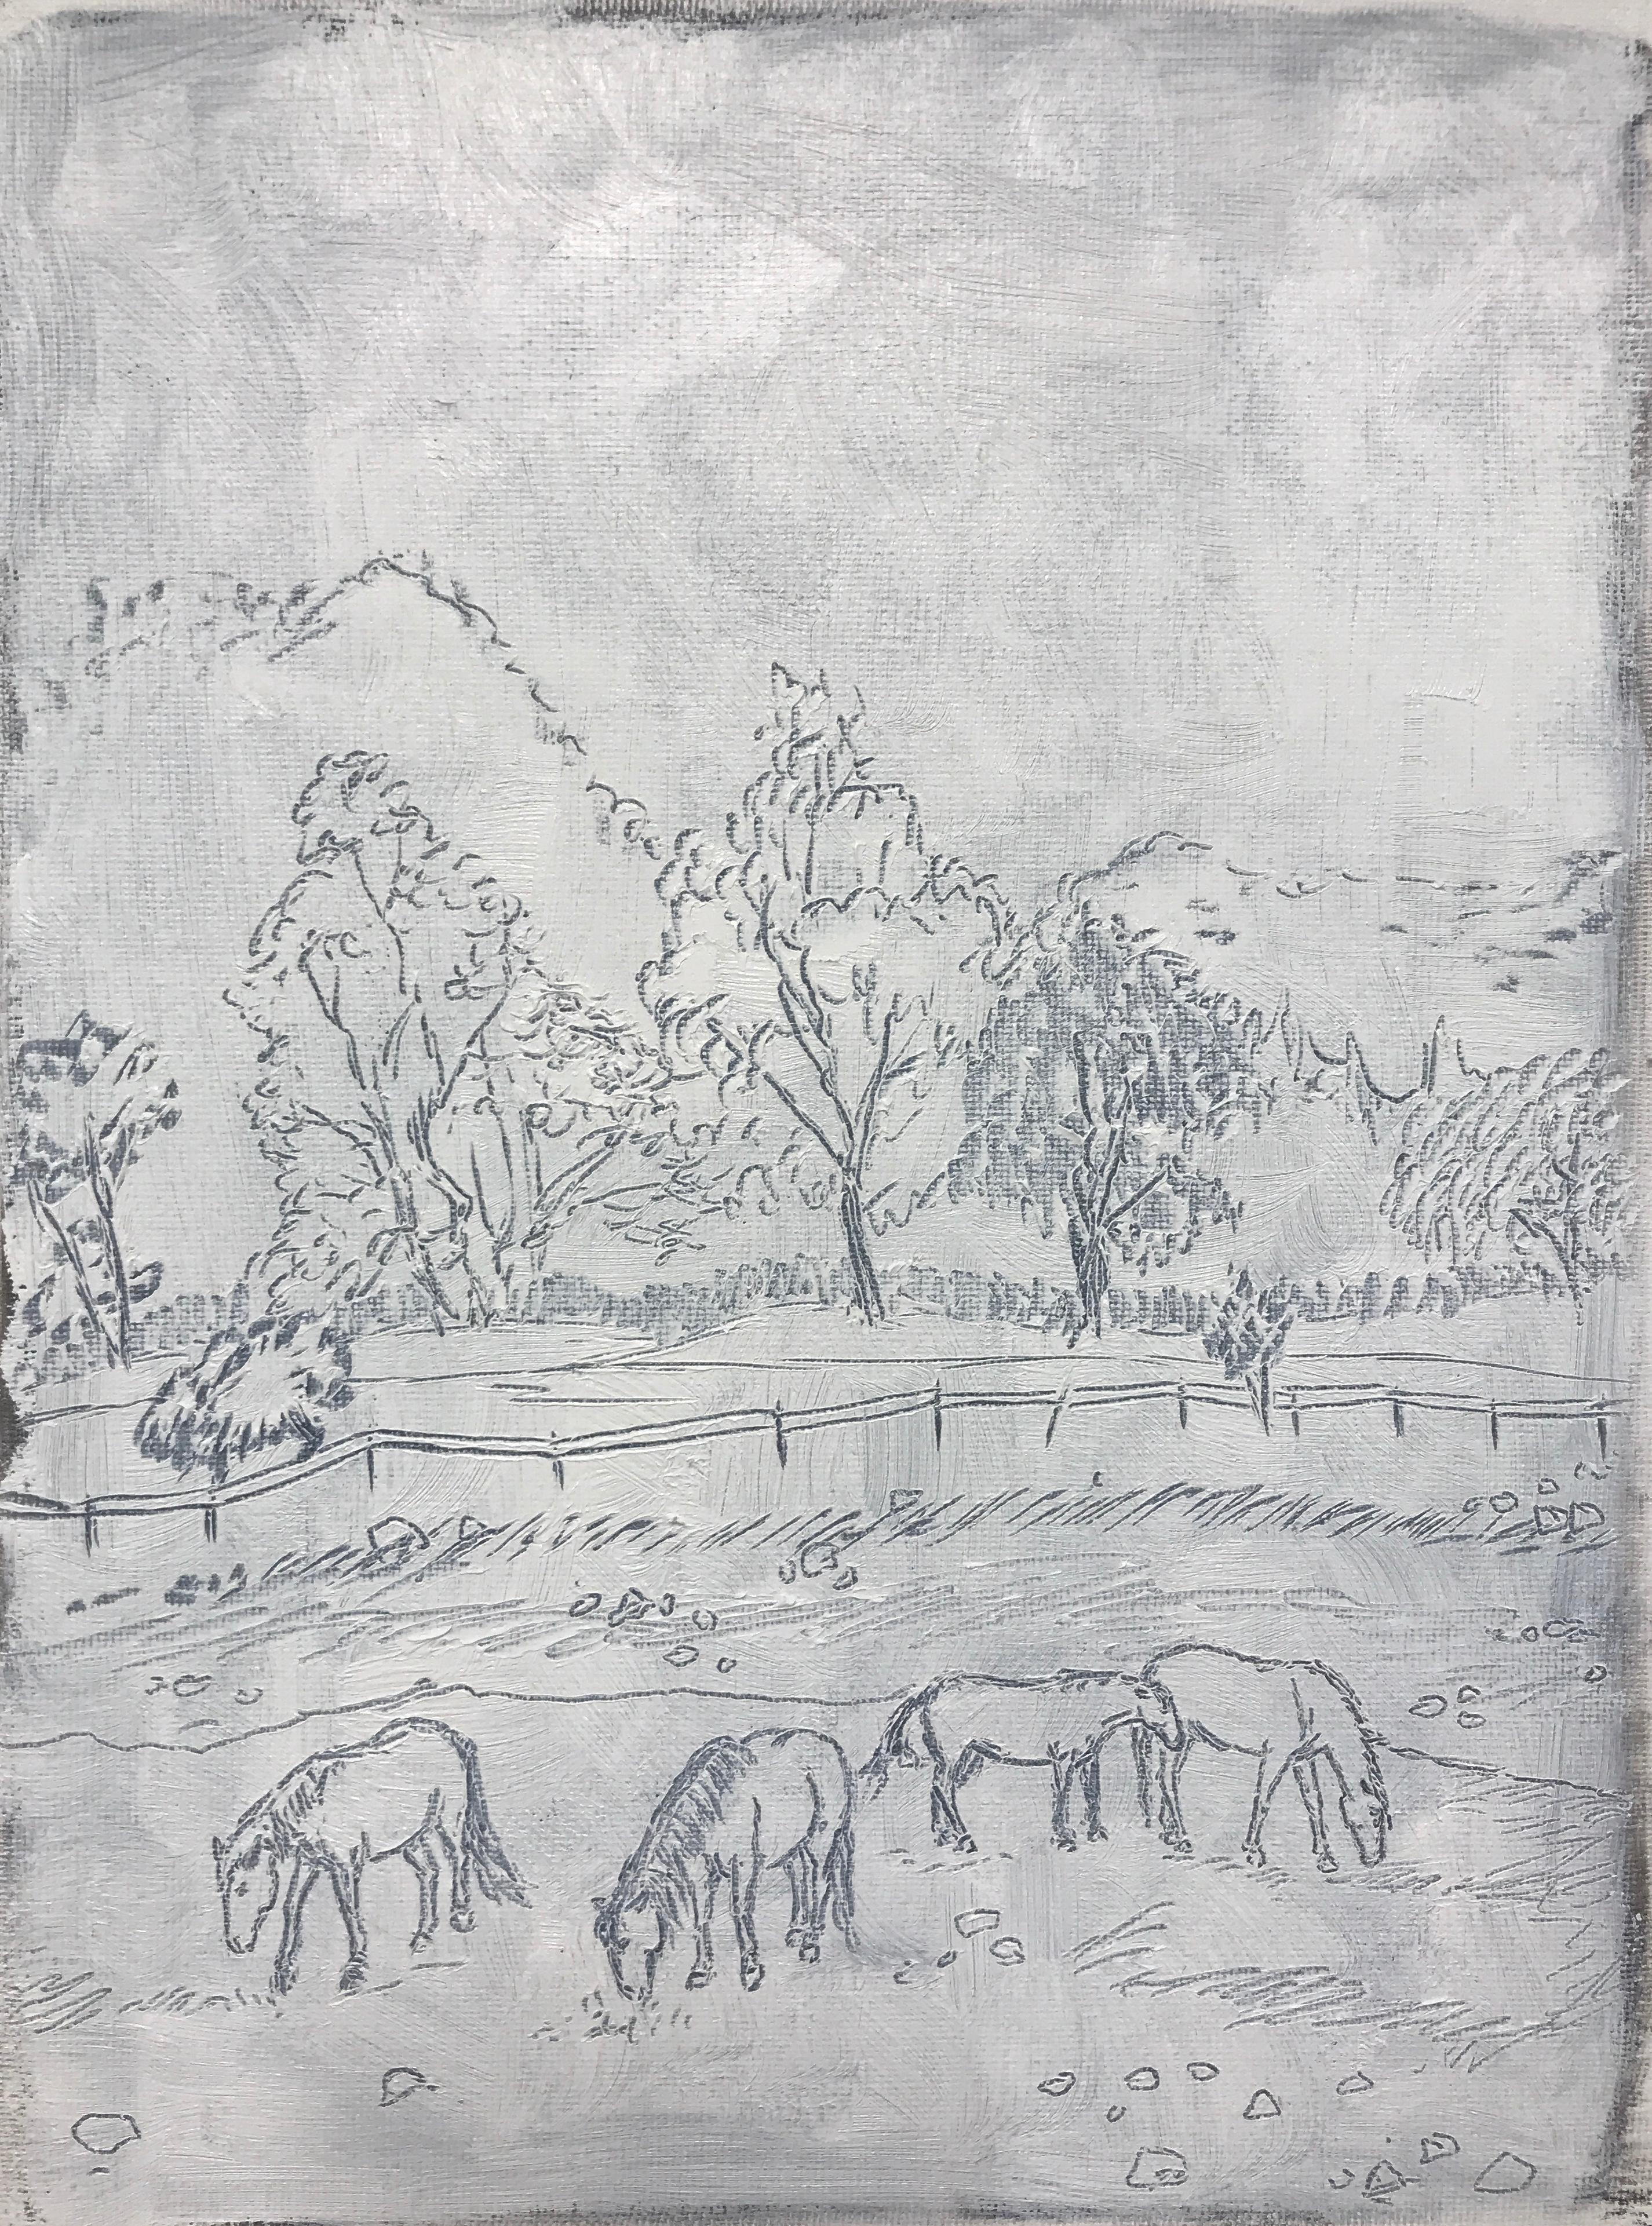 Julie Ferris Animal Painting - "At Breakfast" - Horse Painting - Sketch - George Stubbs